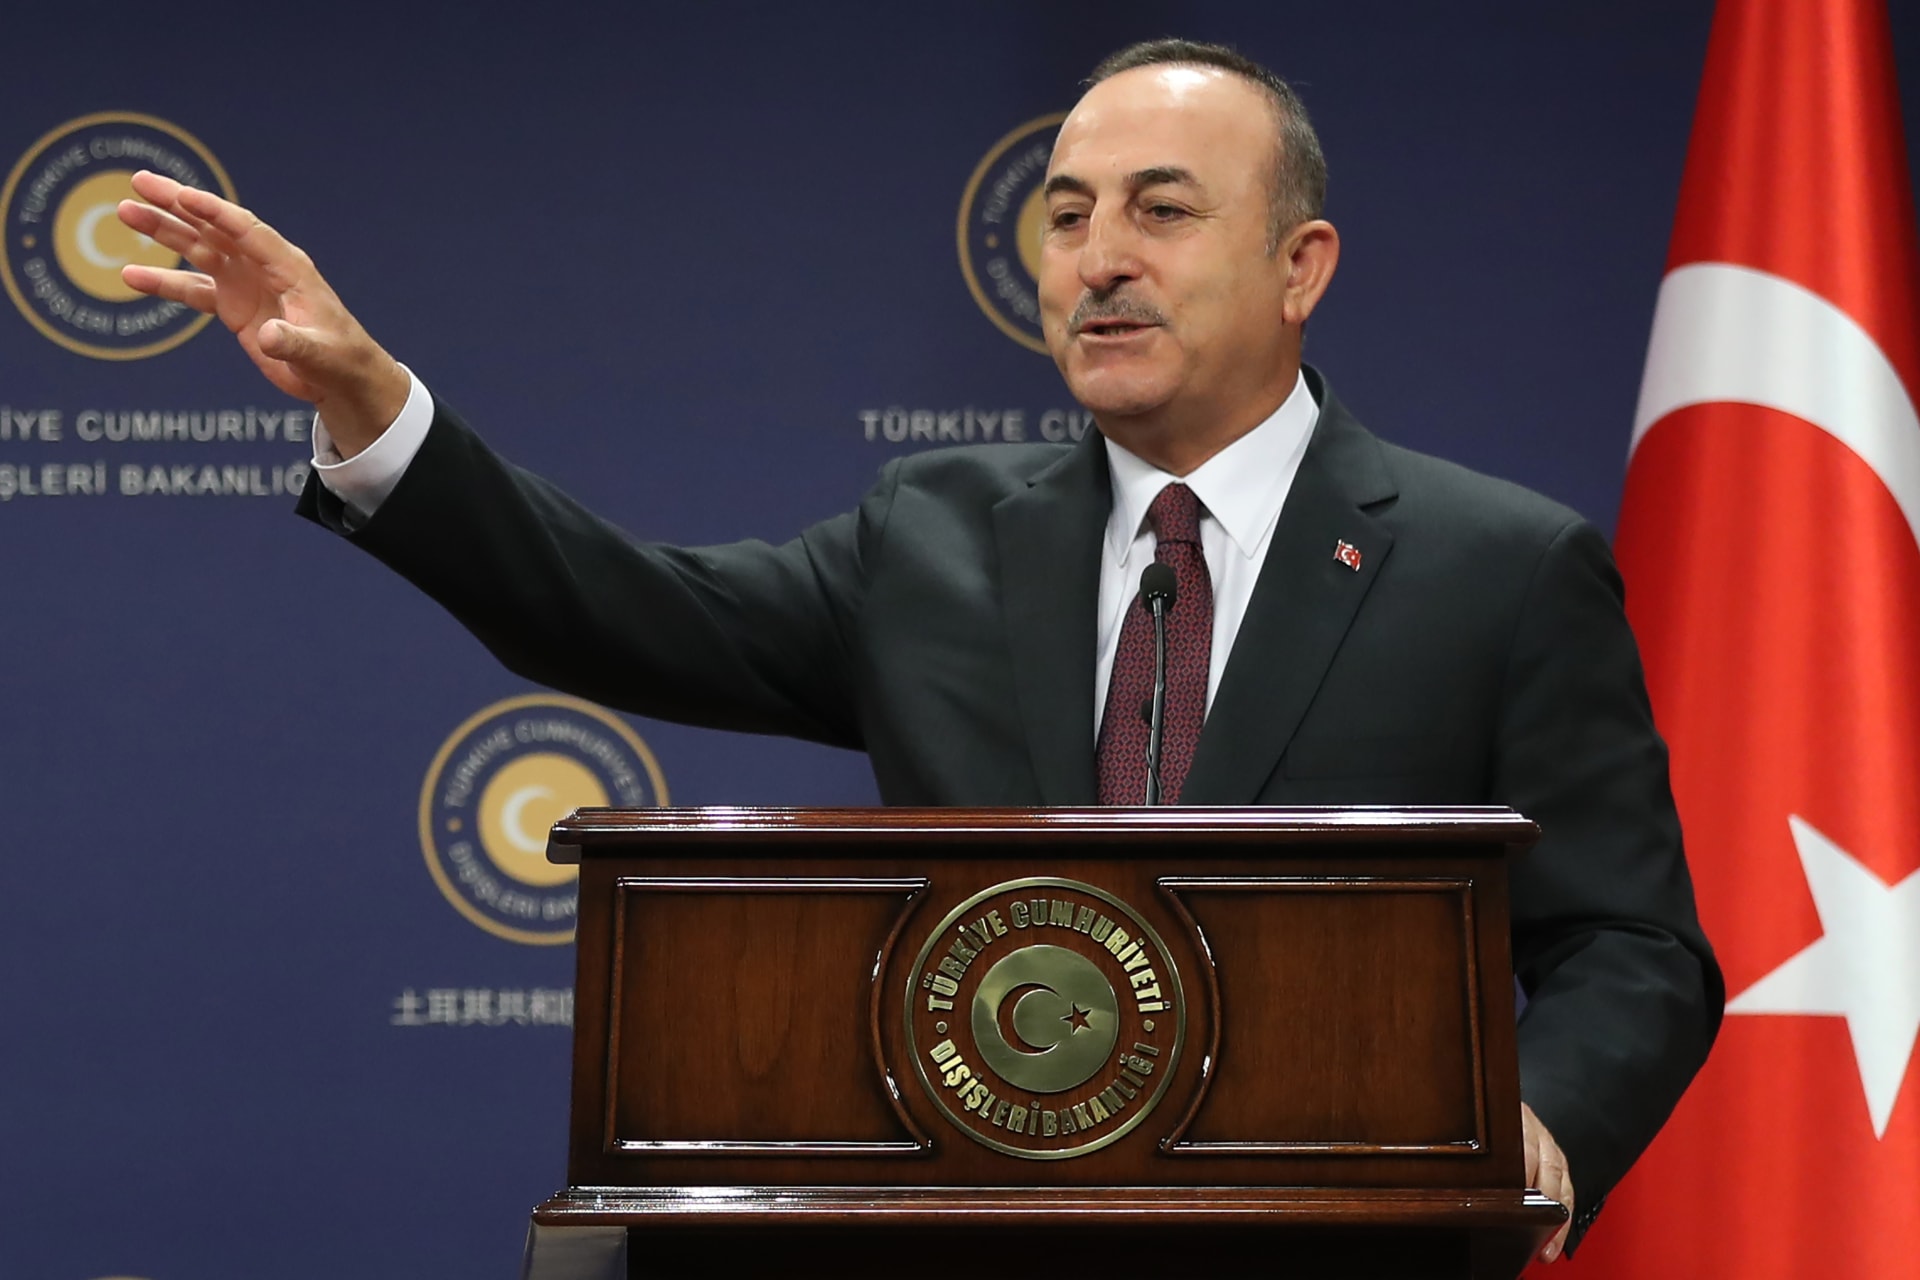 تركيا ترفض تصريحات أممية حول طبيعة دورها في ليبيا: "مُنحازة ومُضللة"